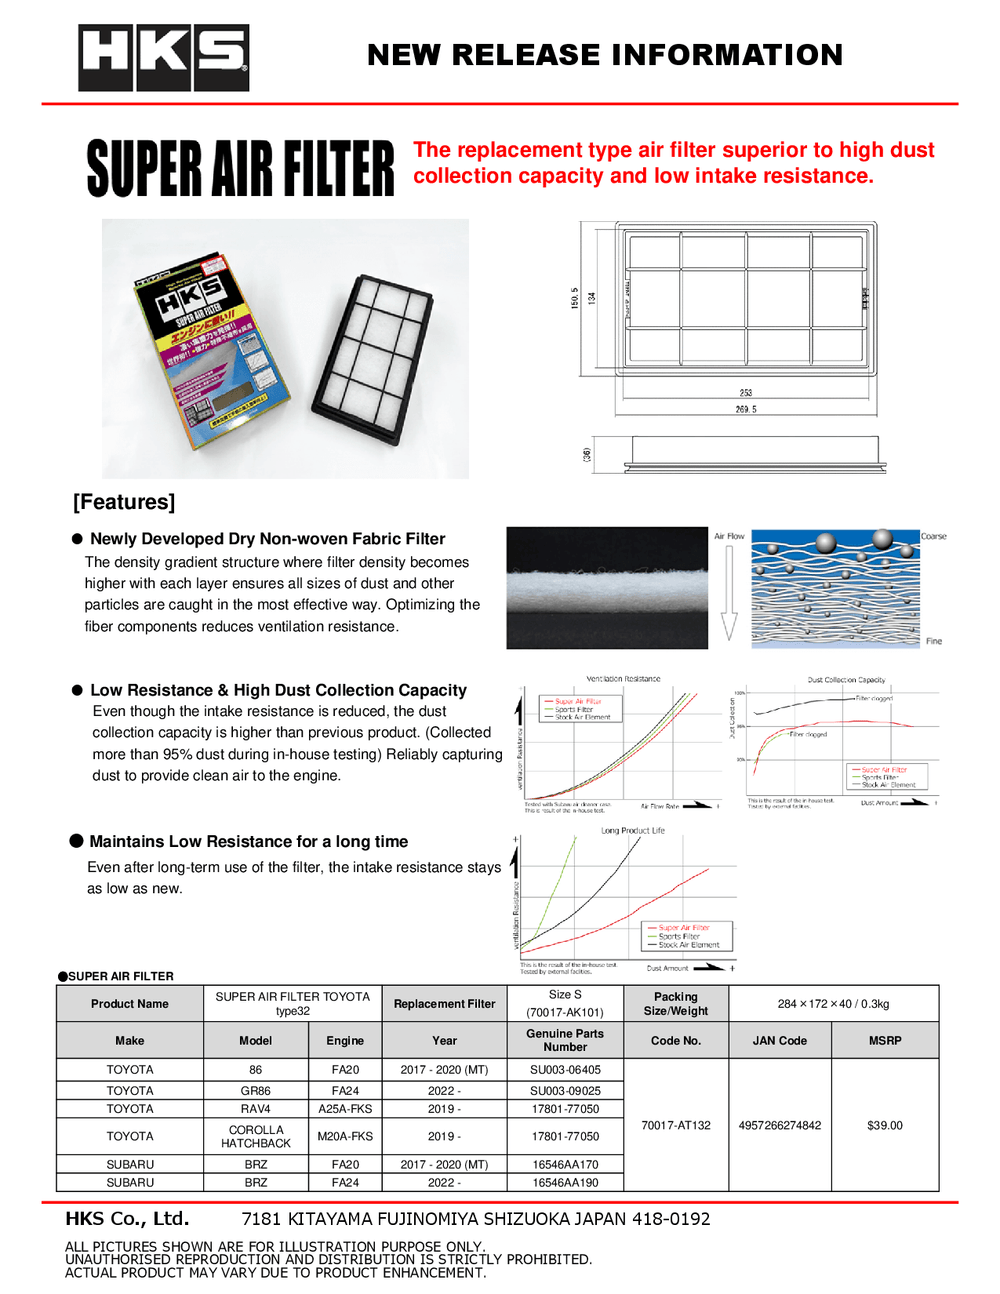 HKS GR86 / BRZ Super Air Filter